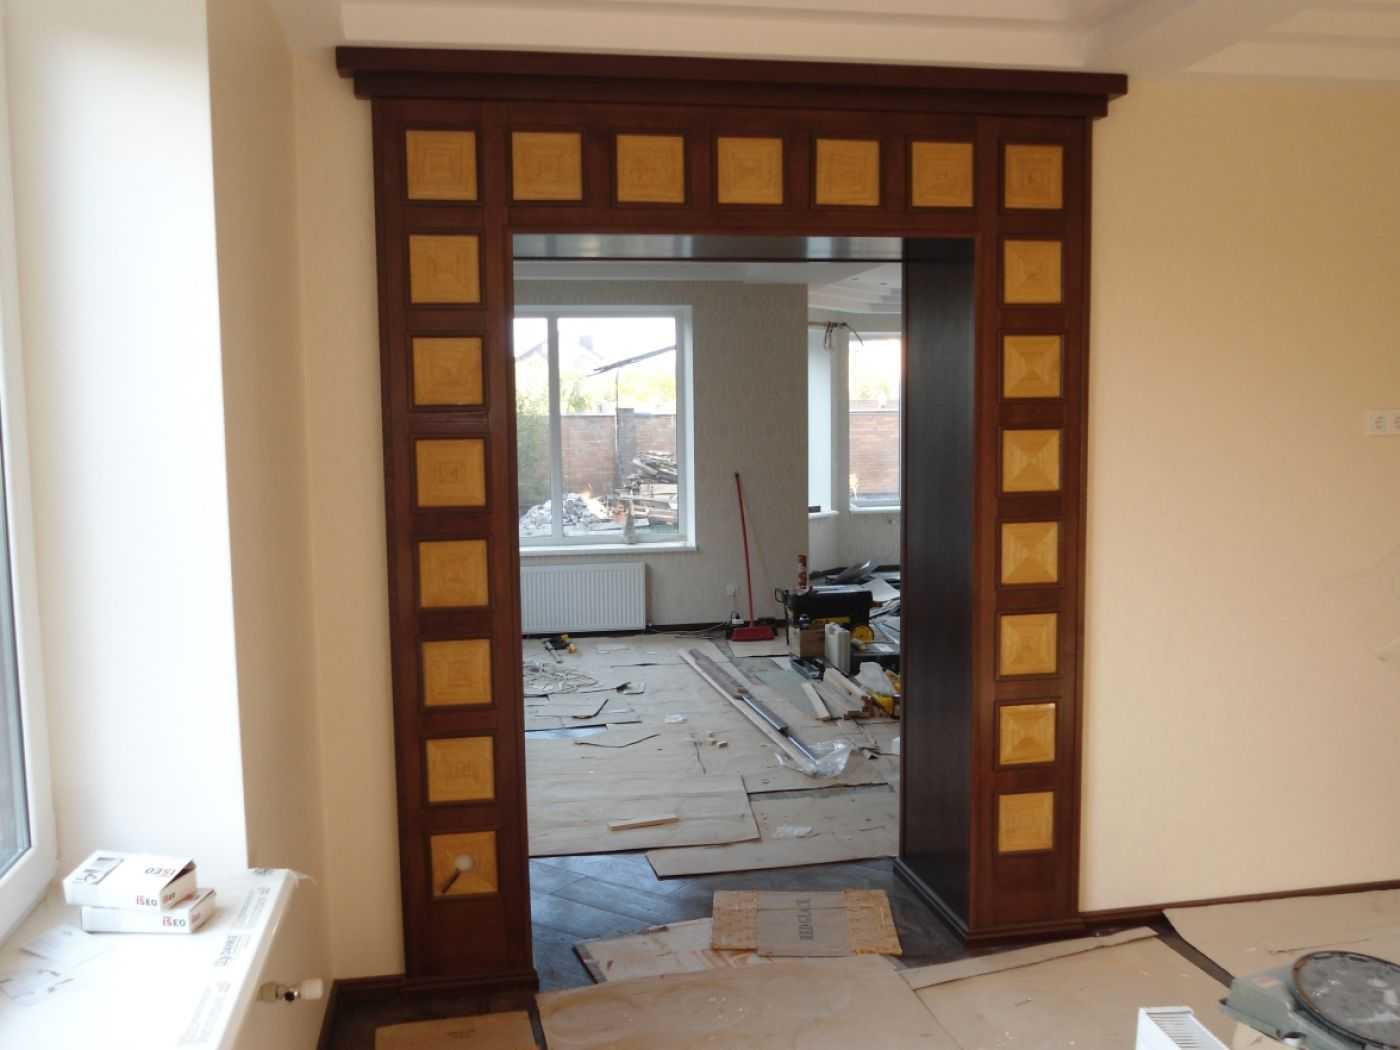 Если вы хотите зрительно увеличить помещение, используйте дверные проемы без двери В соответствии с общим дизайном помещения их можно отделать гипсокартоном, пластиком, полиуретановой лепниной, деревянными панелями, ламинатом или камнем